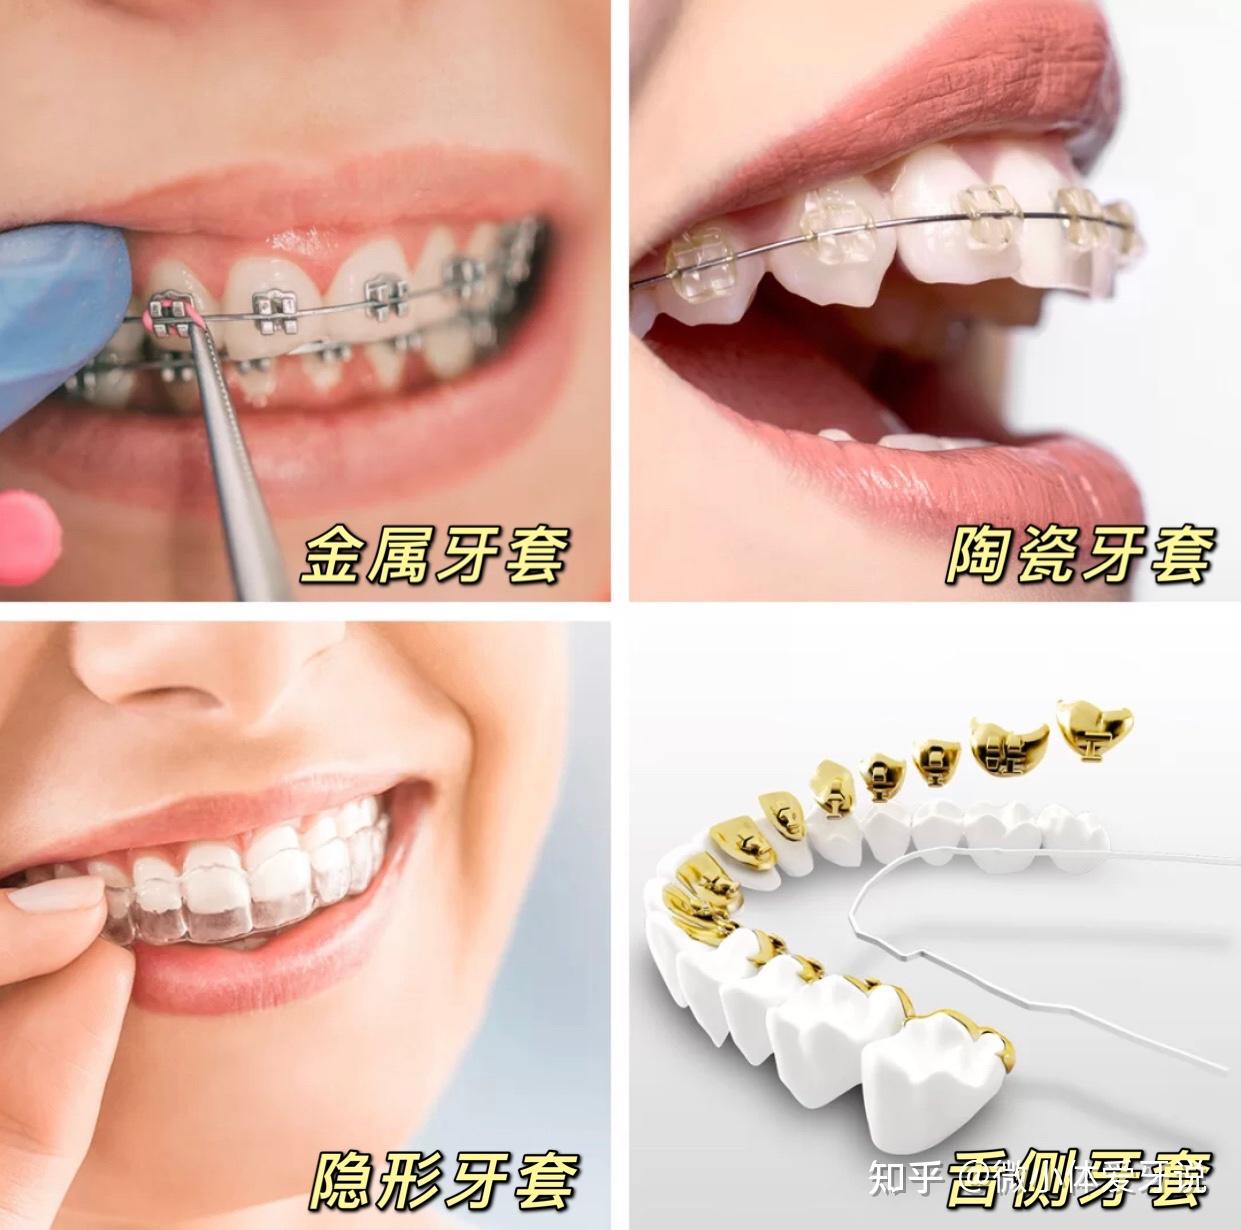 广州牙齿矫正医院怎么找求推荐的口腔医院牙齿矫正价格片切拔牙正畸